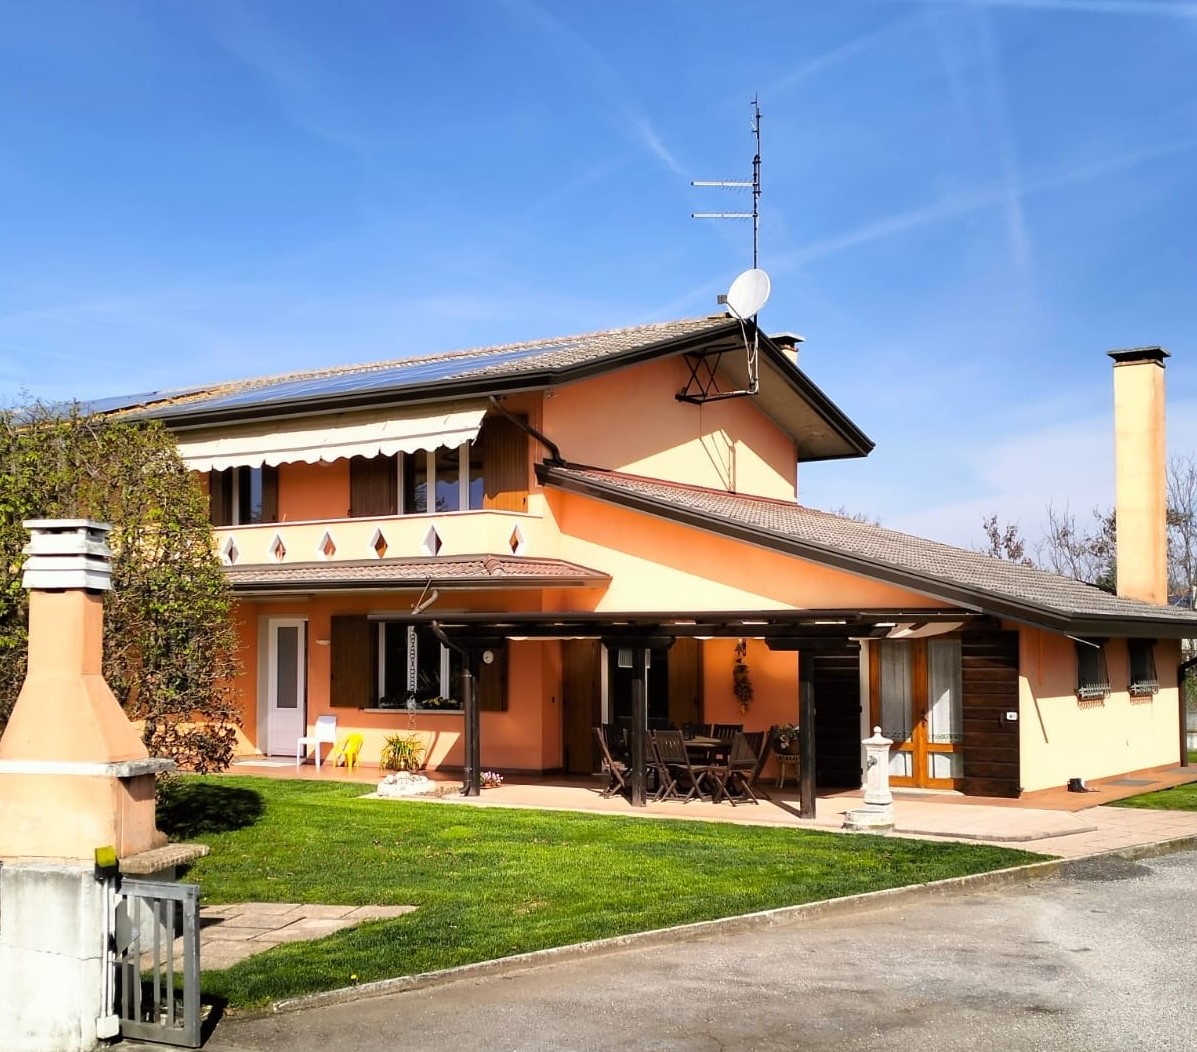 30_Riqualificazione energetica | abitazione privata | Treviso (TV)